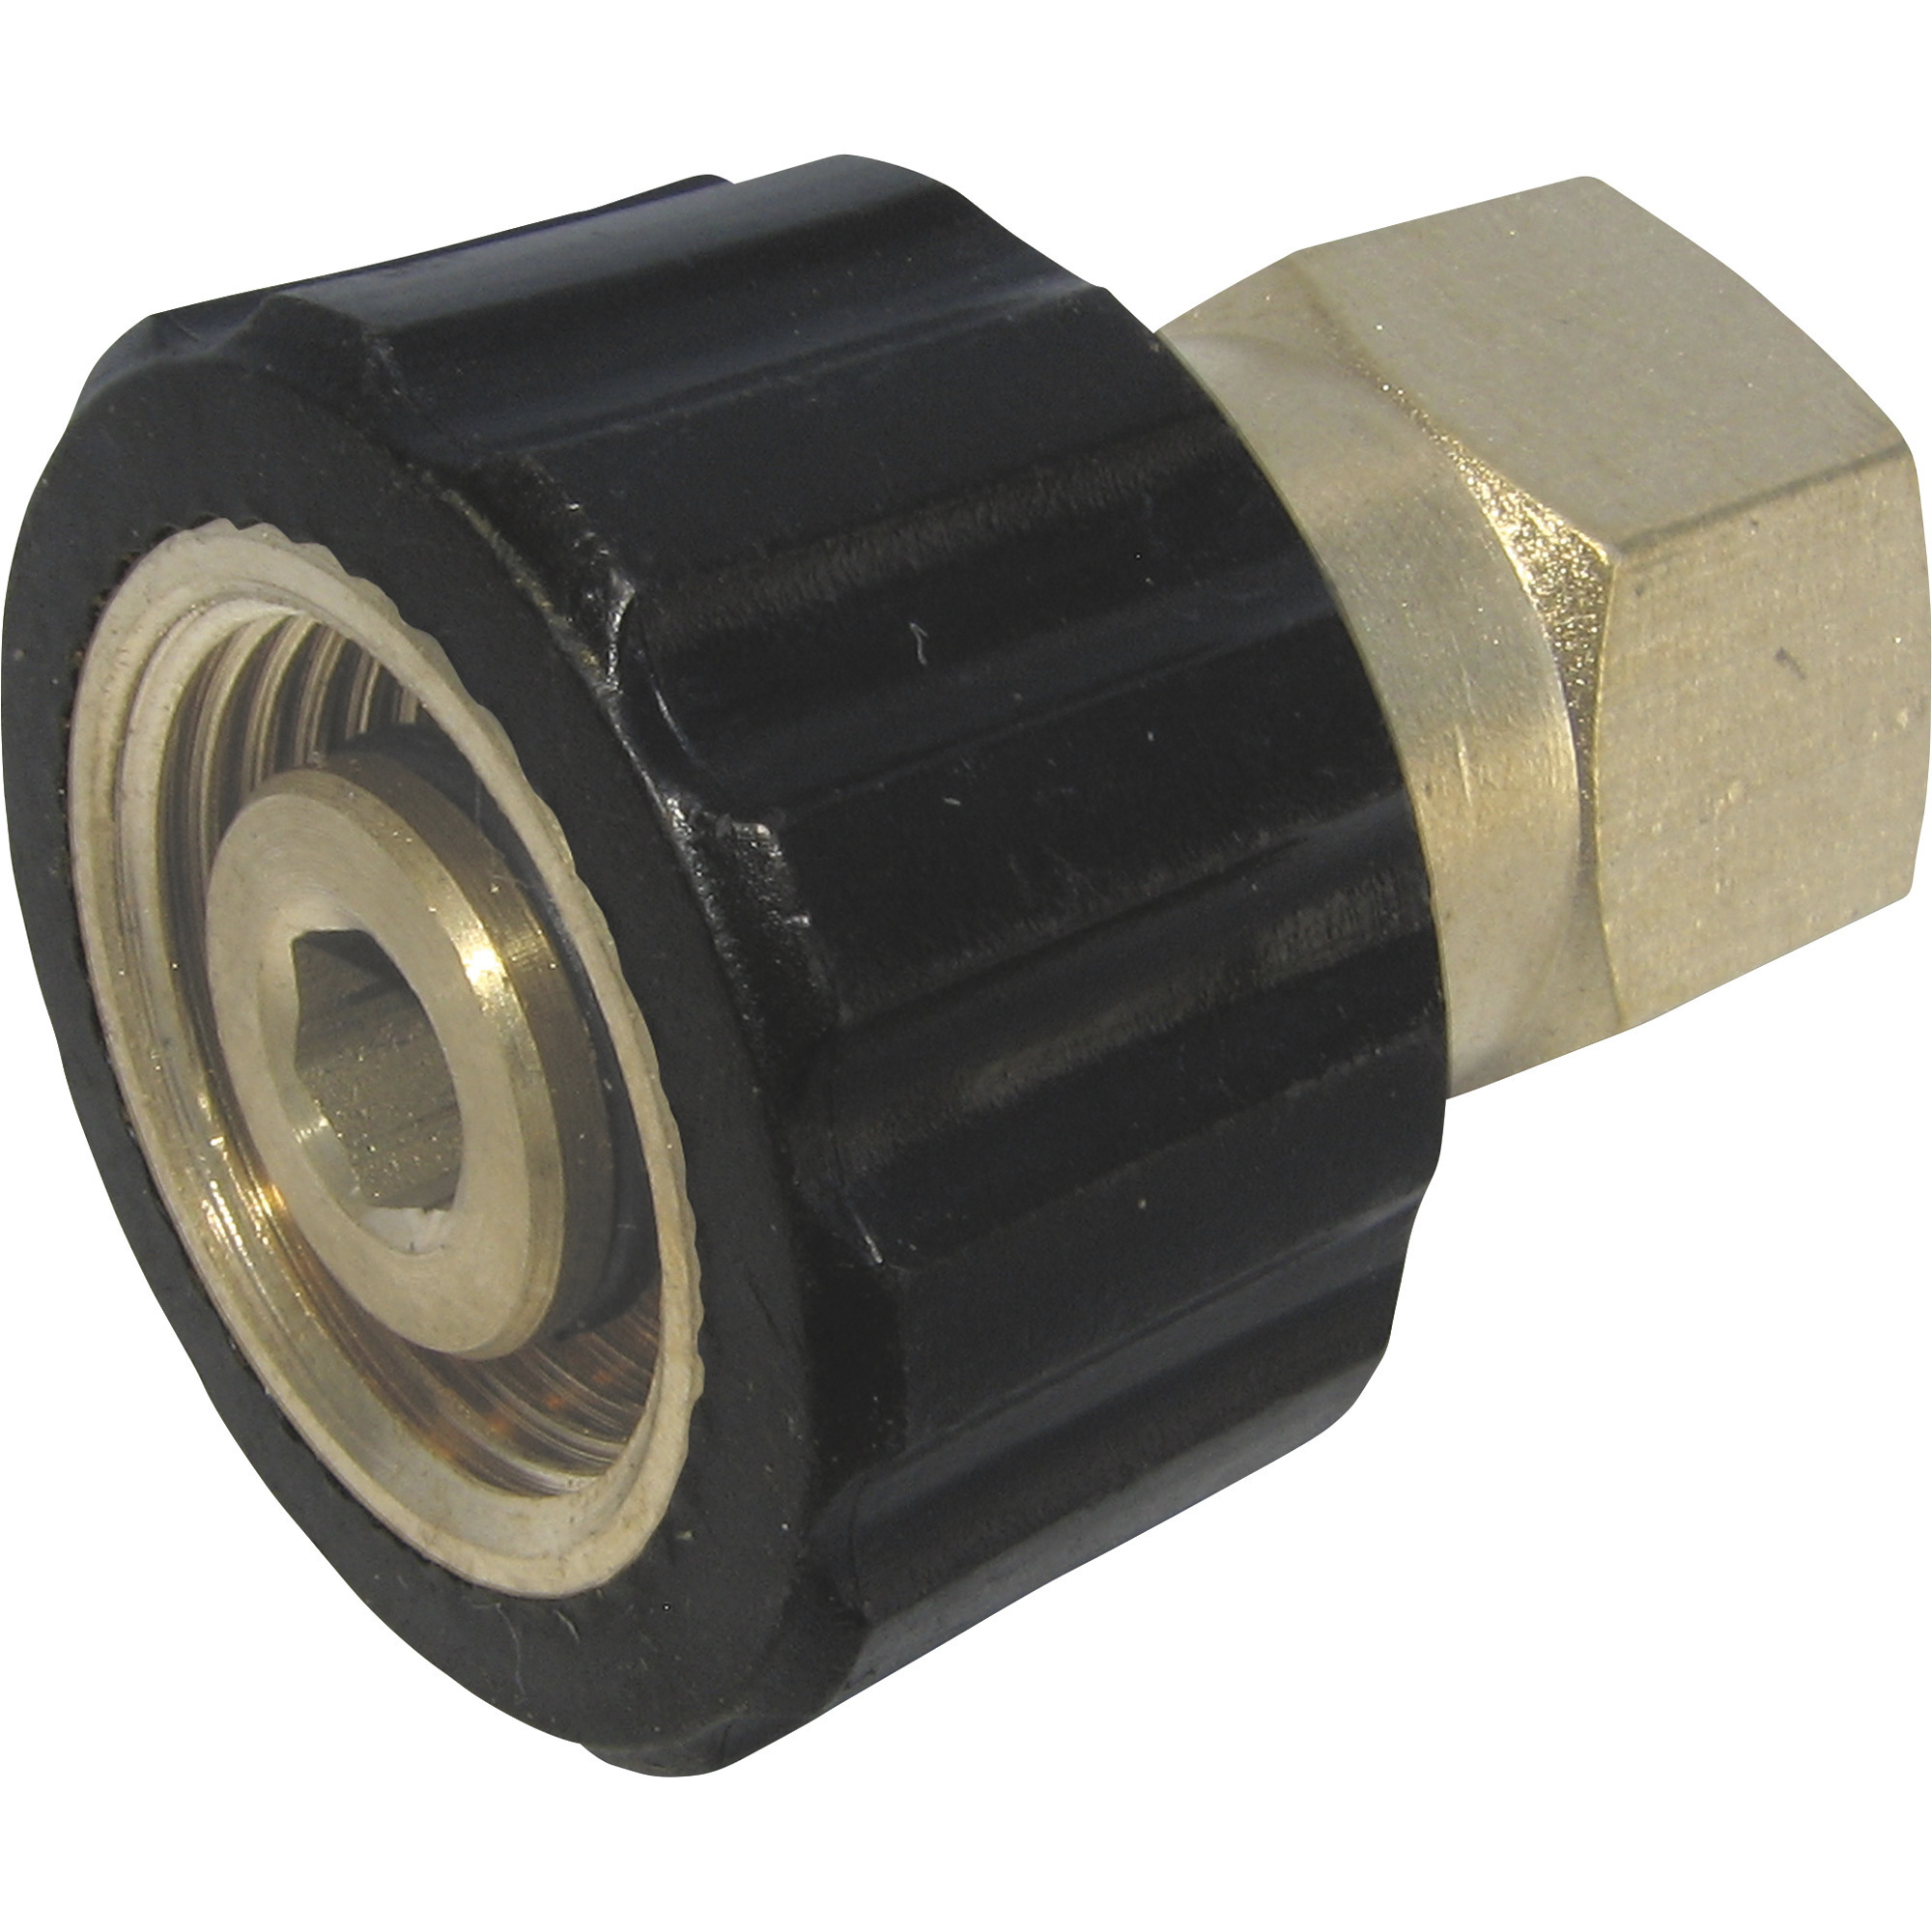 General Pump Brass Pressure Washer Quick Change Connector â 1/4Inch Inlet, 4000 PSI, Model ND10027P